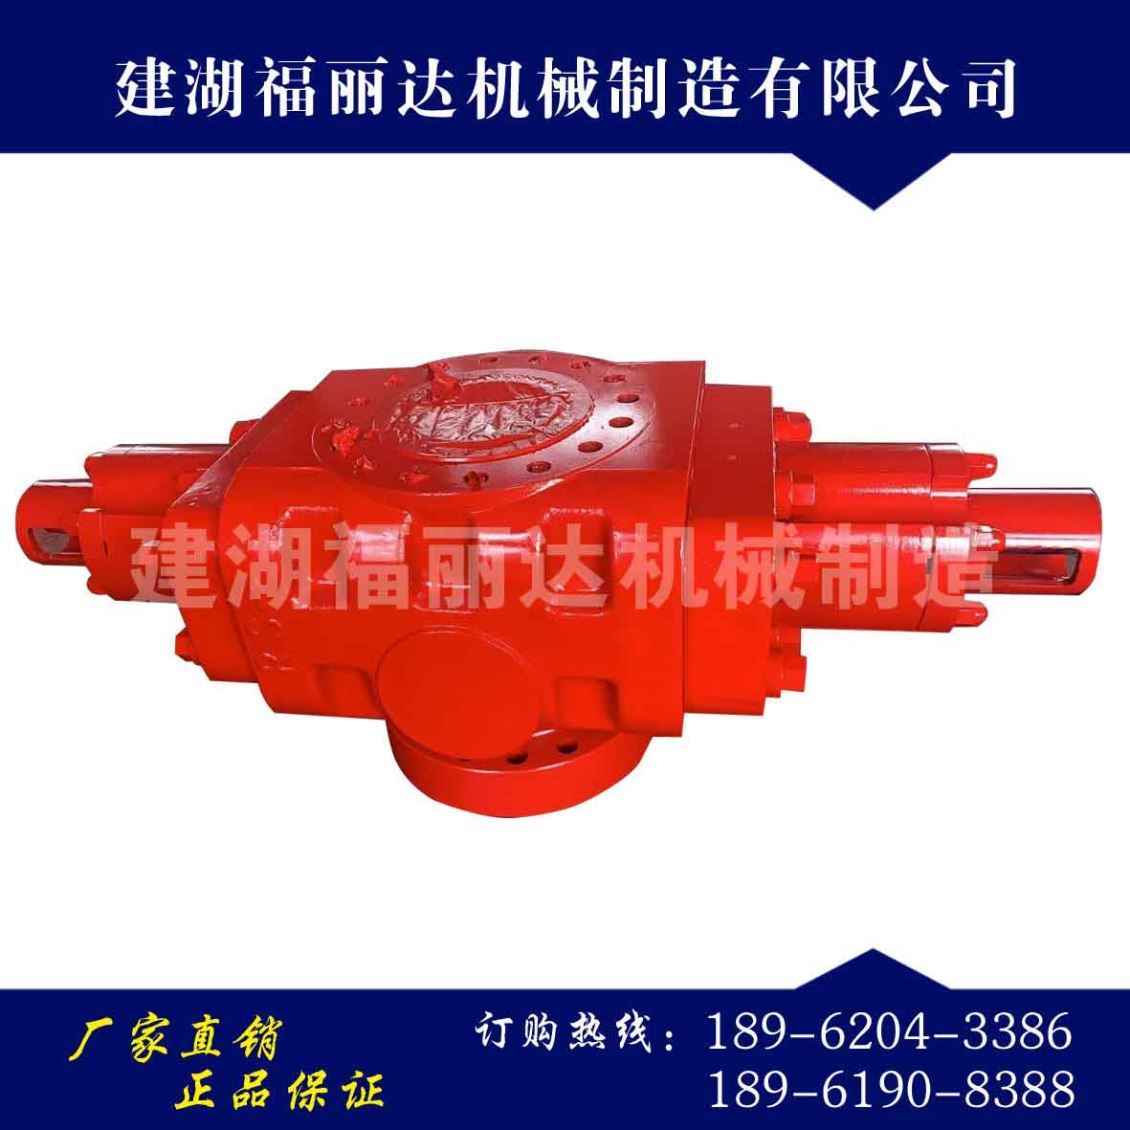 黑龙江防喷器是一种具有全密封和半密封两种功能的井控密封装置